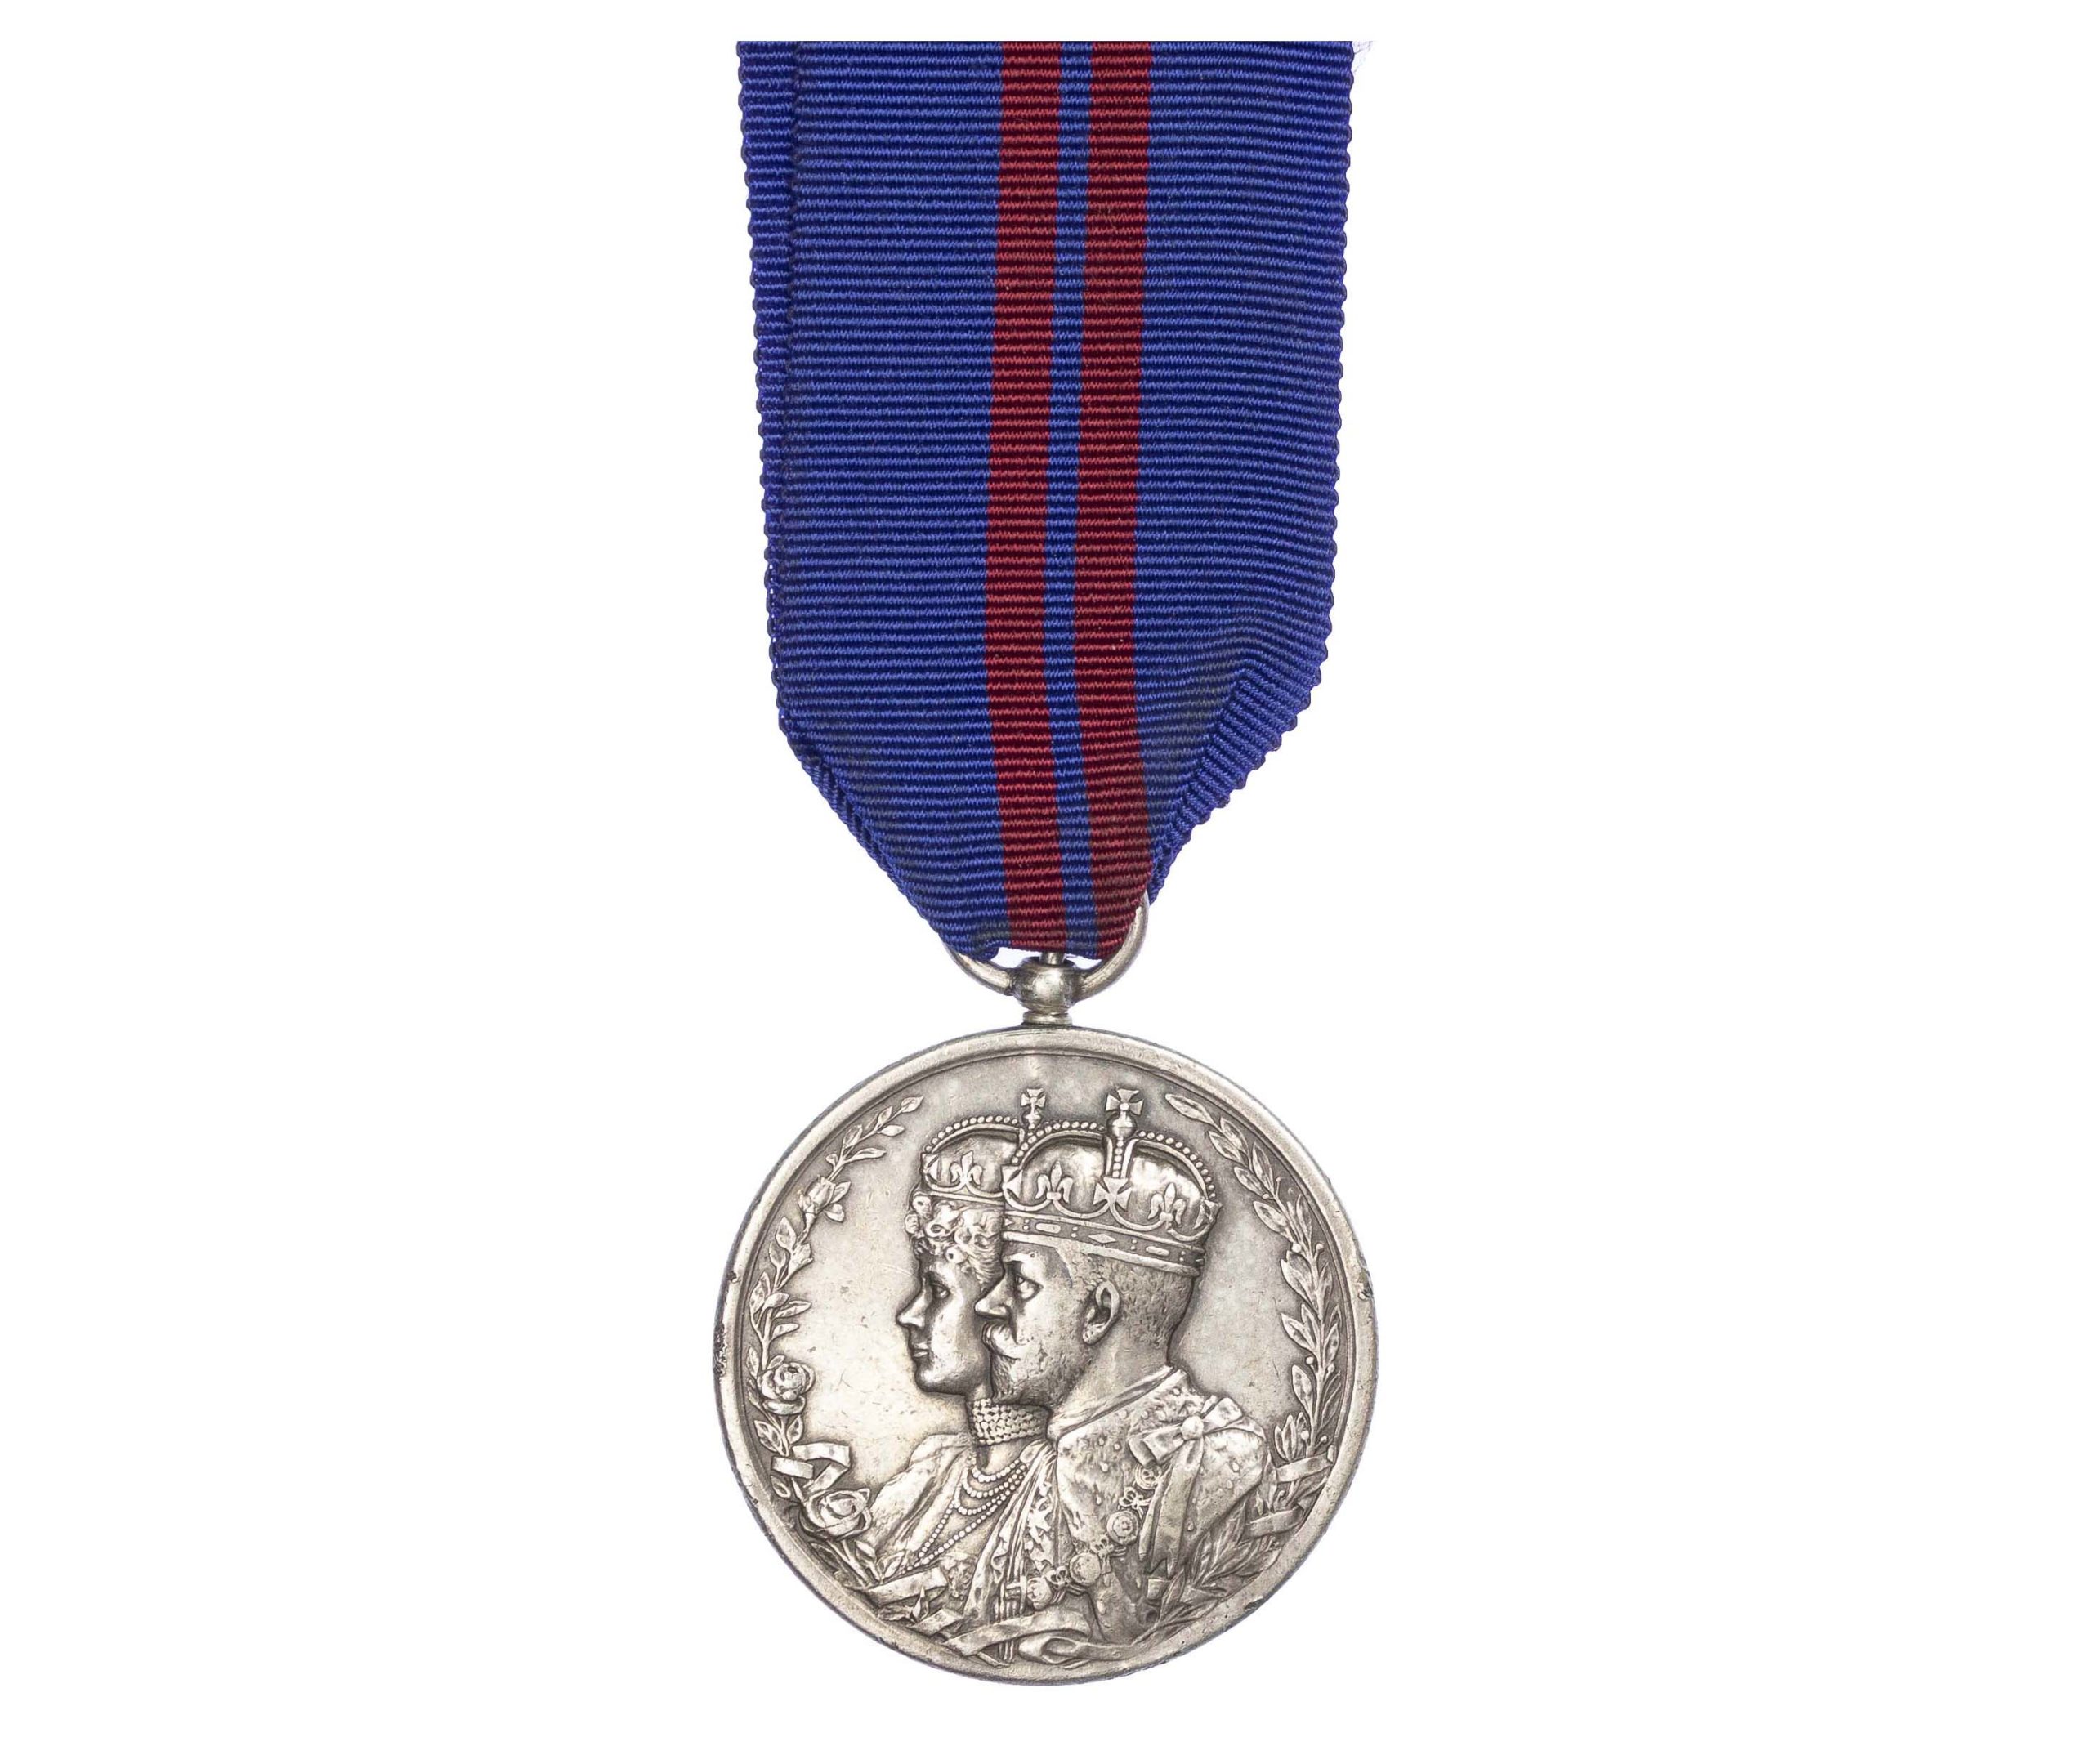 Delhi Durbar Medal 1911, unnamed as issued